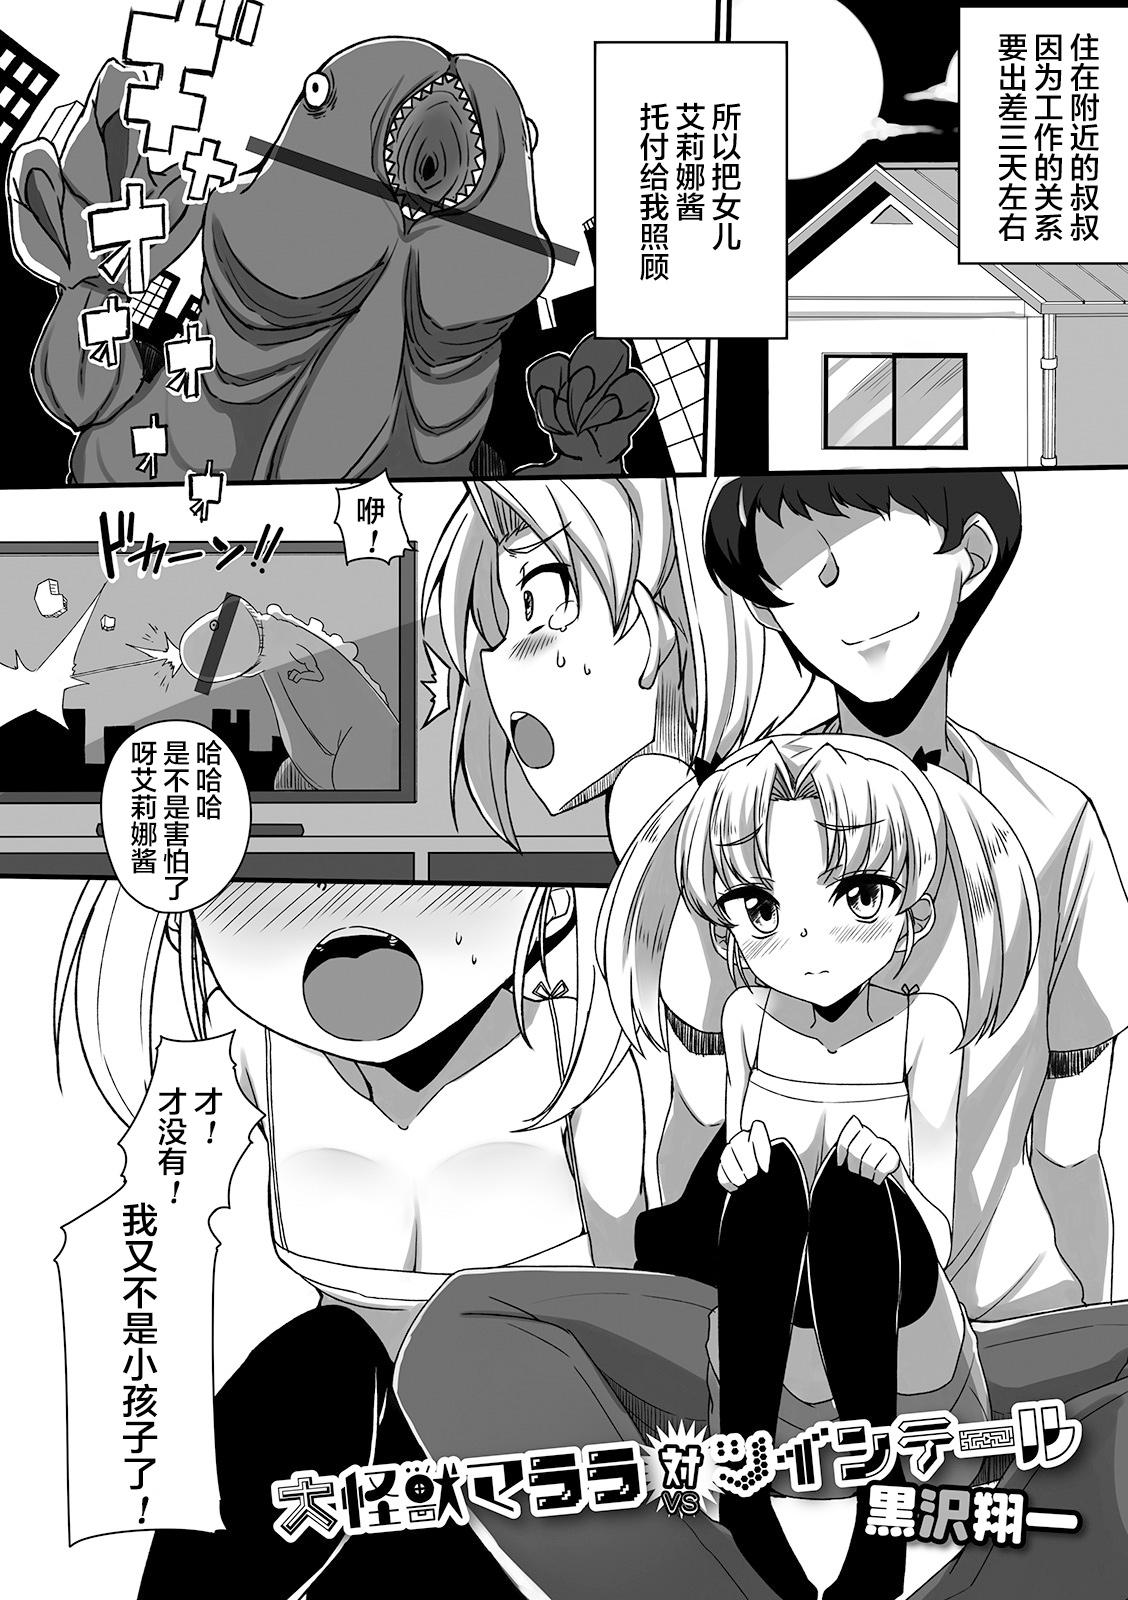 Large Daikaijuu Marara VS Twintail - Original 4some - Page 2